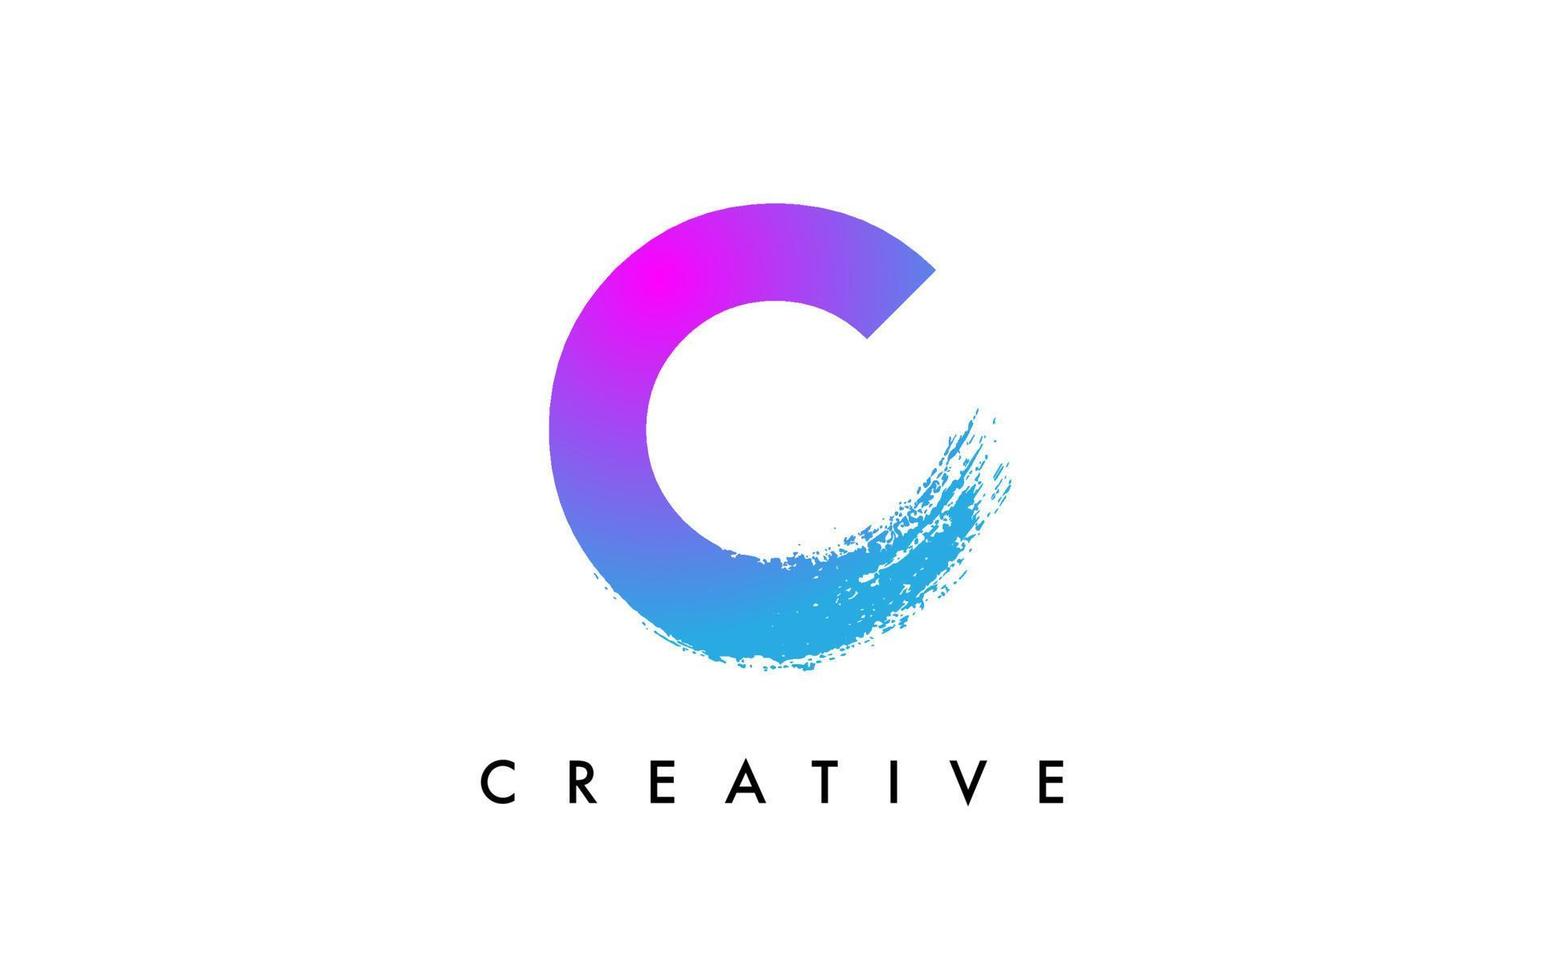 création d'icône de logo lettre c bleu violet avec forme arrondie et fin de coup de pinceau artistique et vecteur de couleur électrique bleu vert